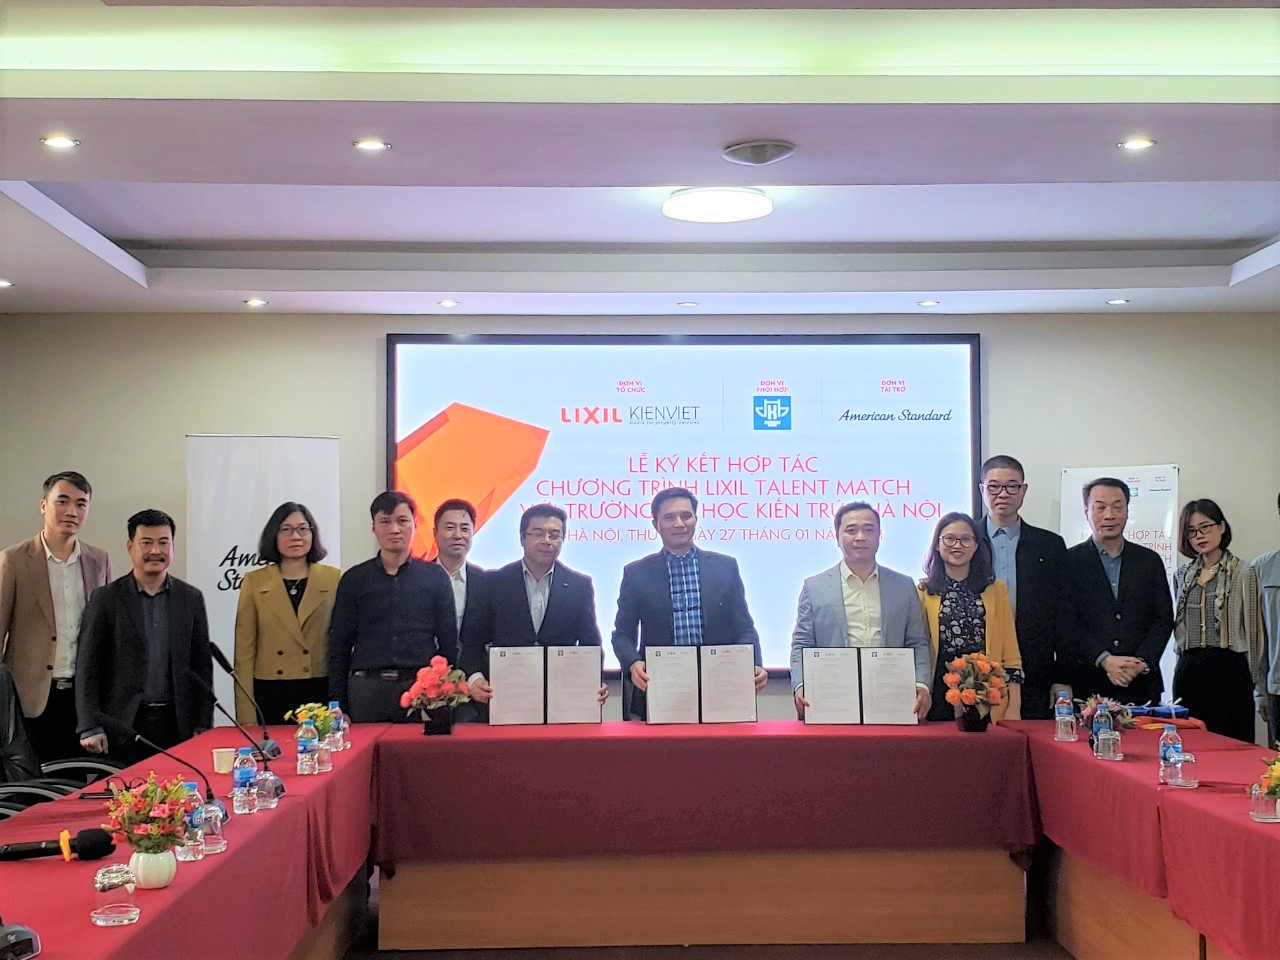 PGS.TS.KTS Lê Quân, Ông Nguyễn Trường Chinh và Ông Vương Đạo Hoàng đại diện các bên ký kết Thỏa thuận hợp tác Chương trình LIXIL Talent Match